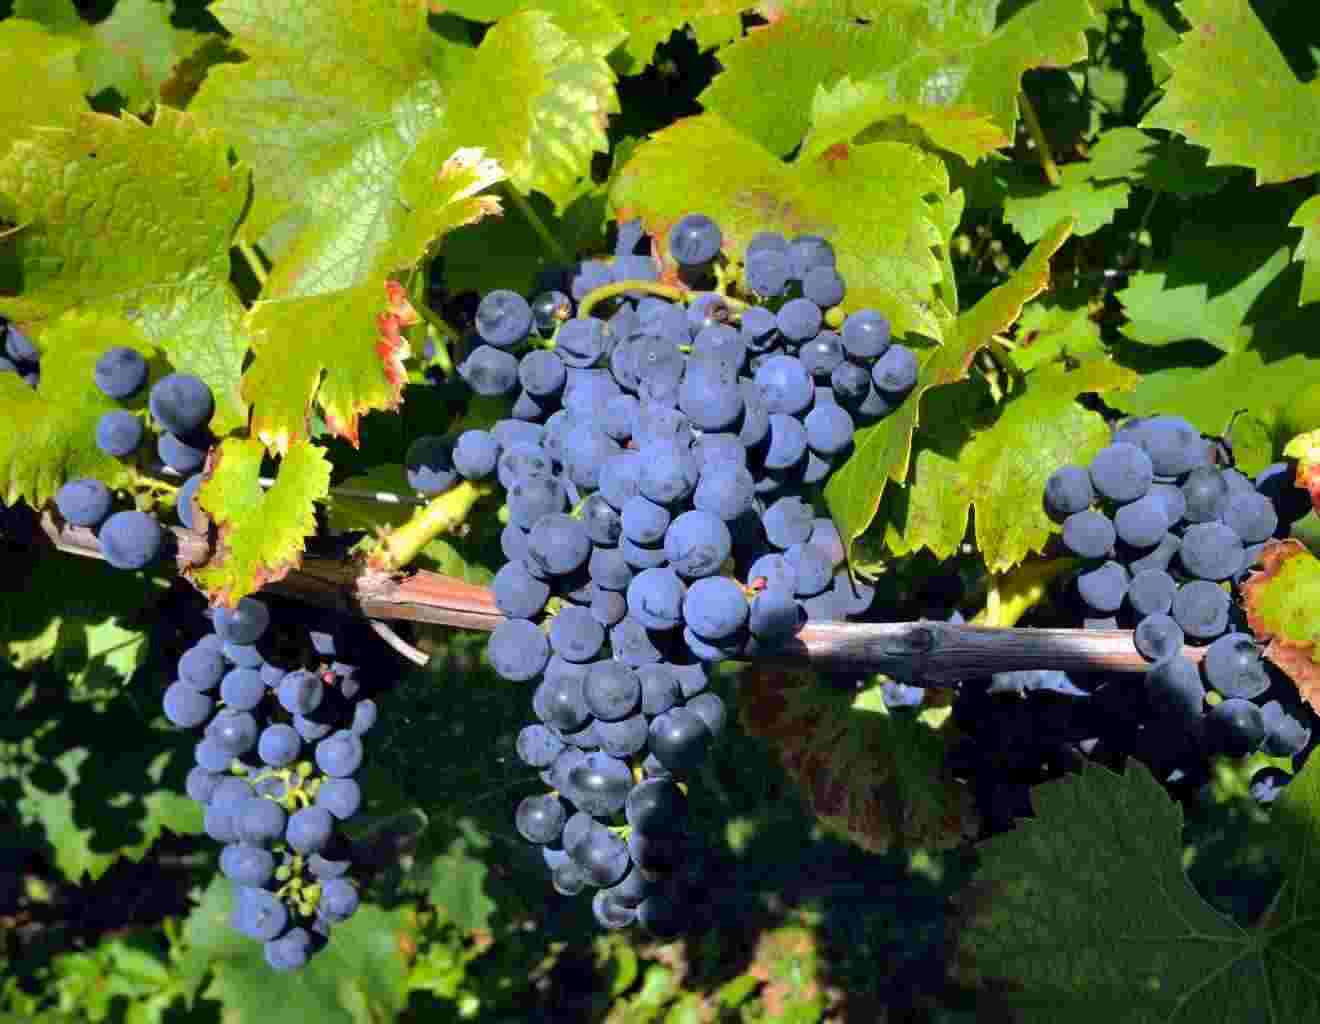 Vendo uva siciliana Nero d'Avola DOC, Trebbiano, Inzolia(Ansonica) 2018